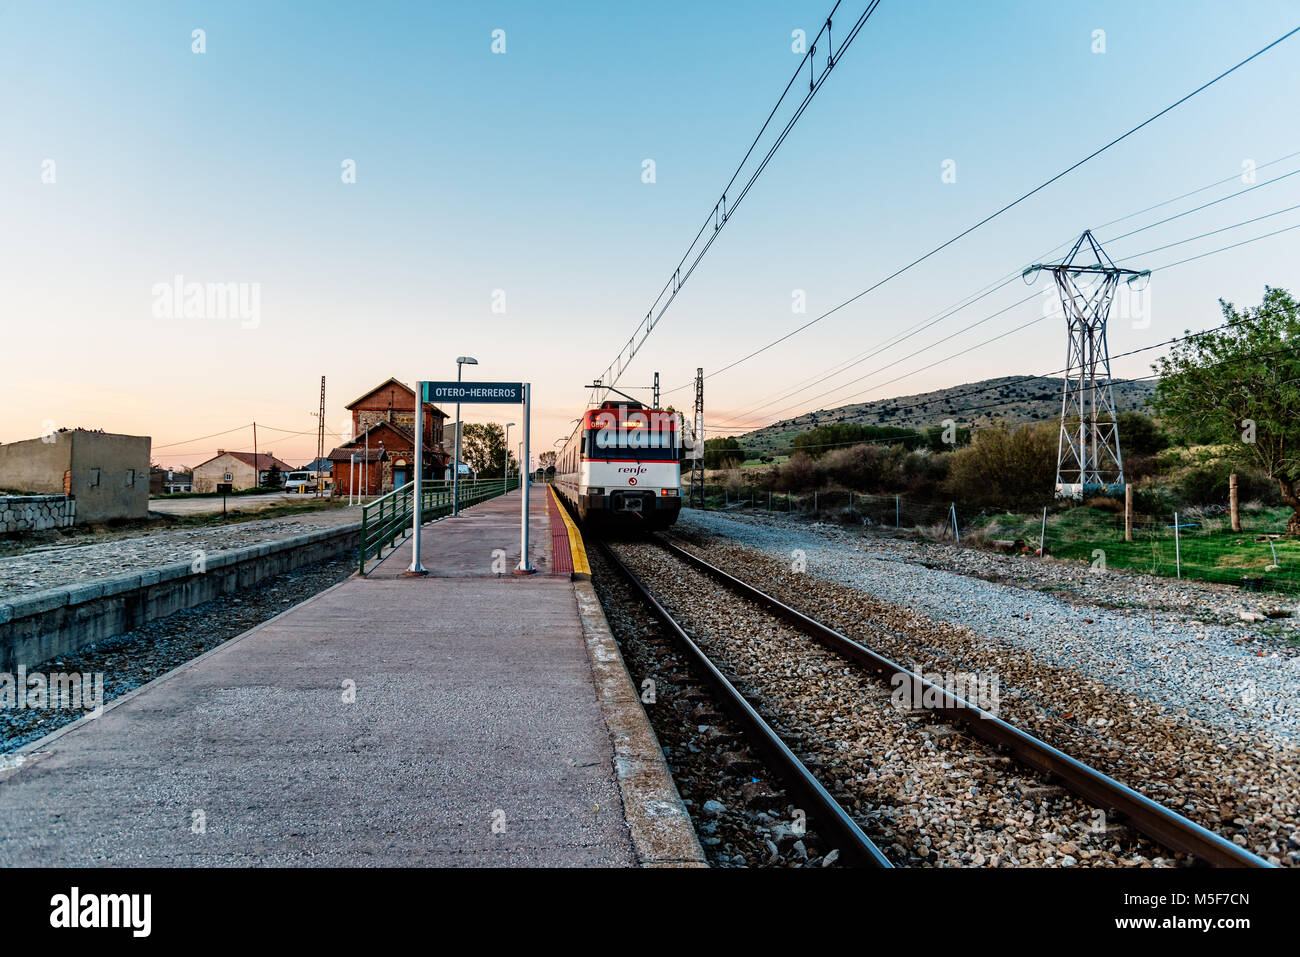 Otero de Herreros, Spanien - 15 April, 2017: Bahnhof am alten Bahnhof Plattform in der Landschaft bei Sonnenuntergang. Stockfoto